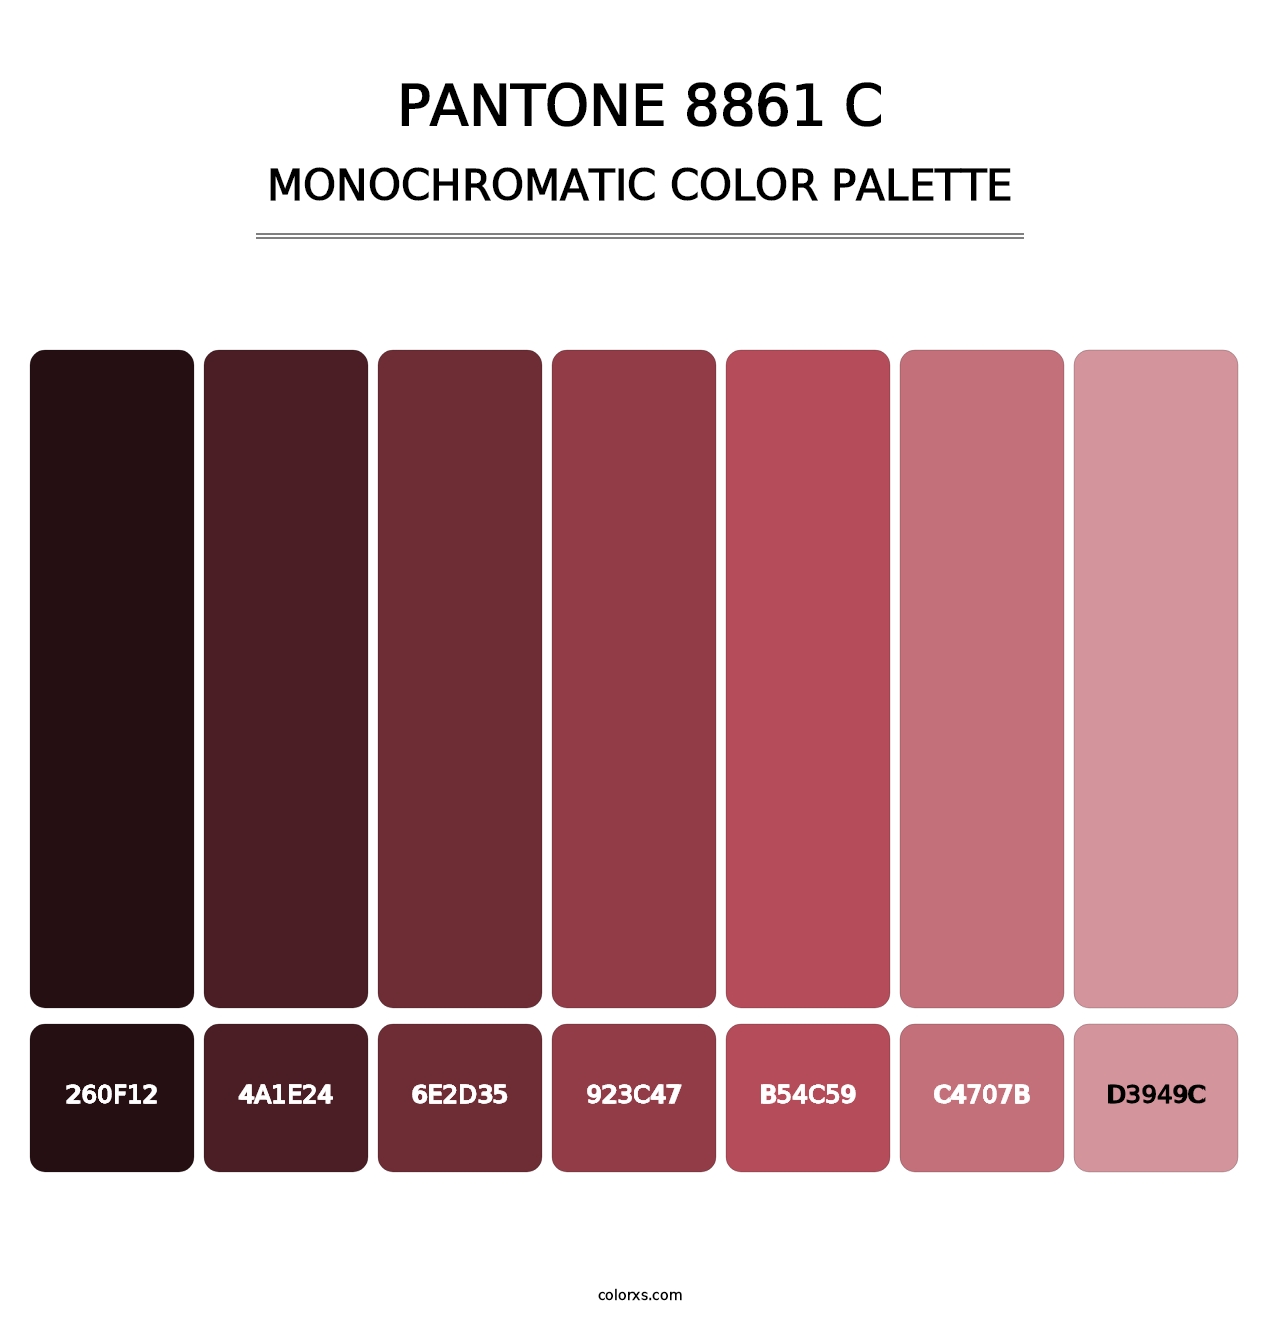 PANTONE 8861 C - Monochromatic Color Palette